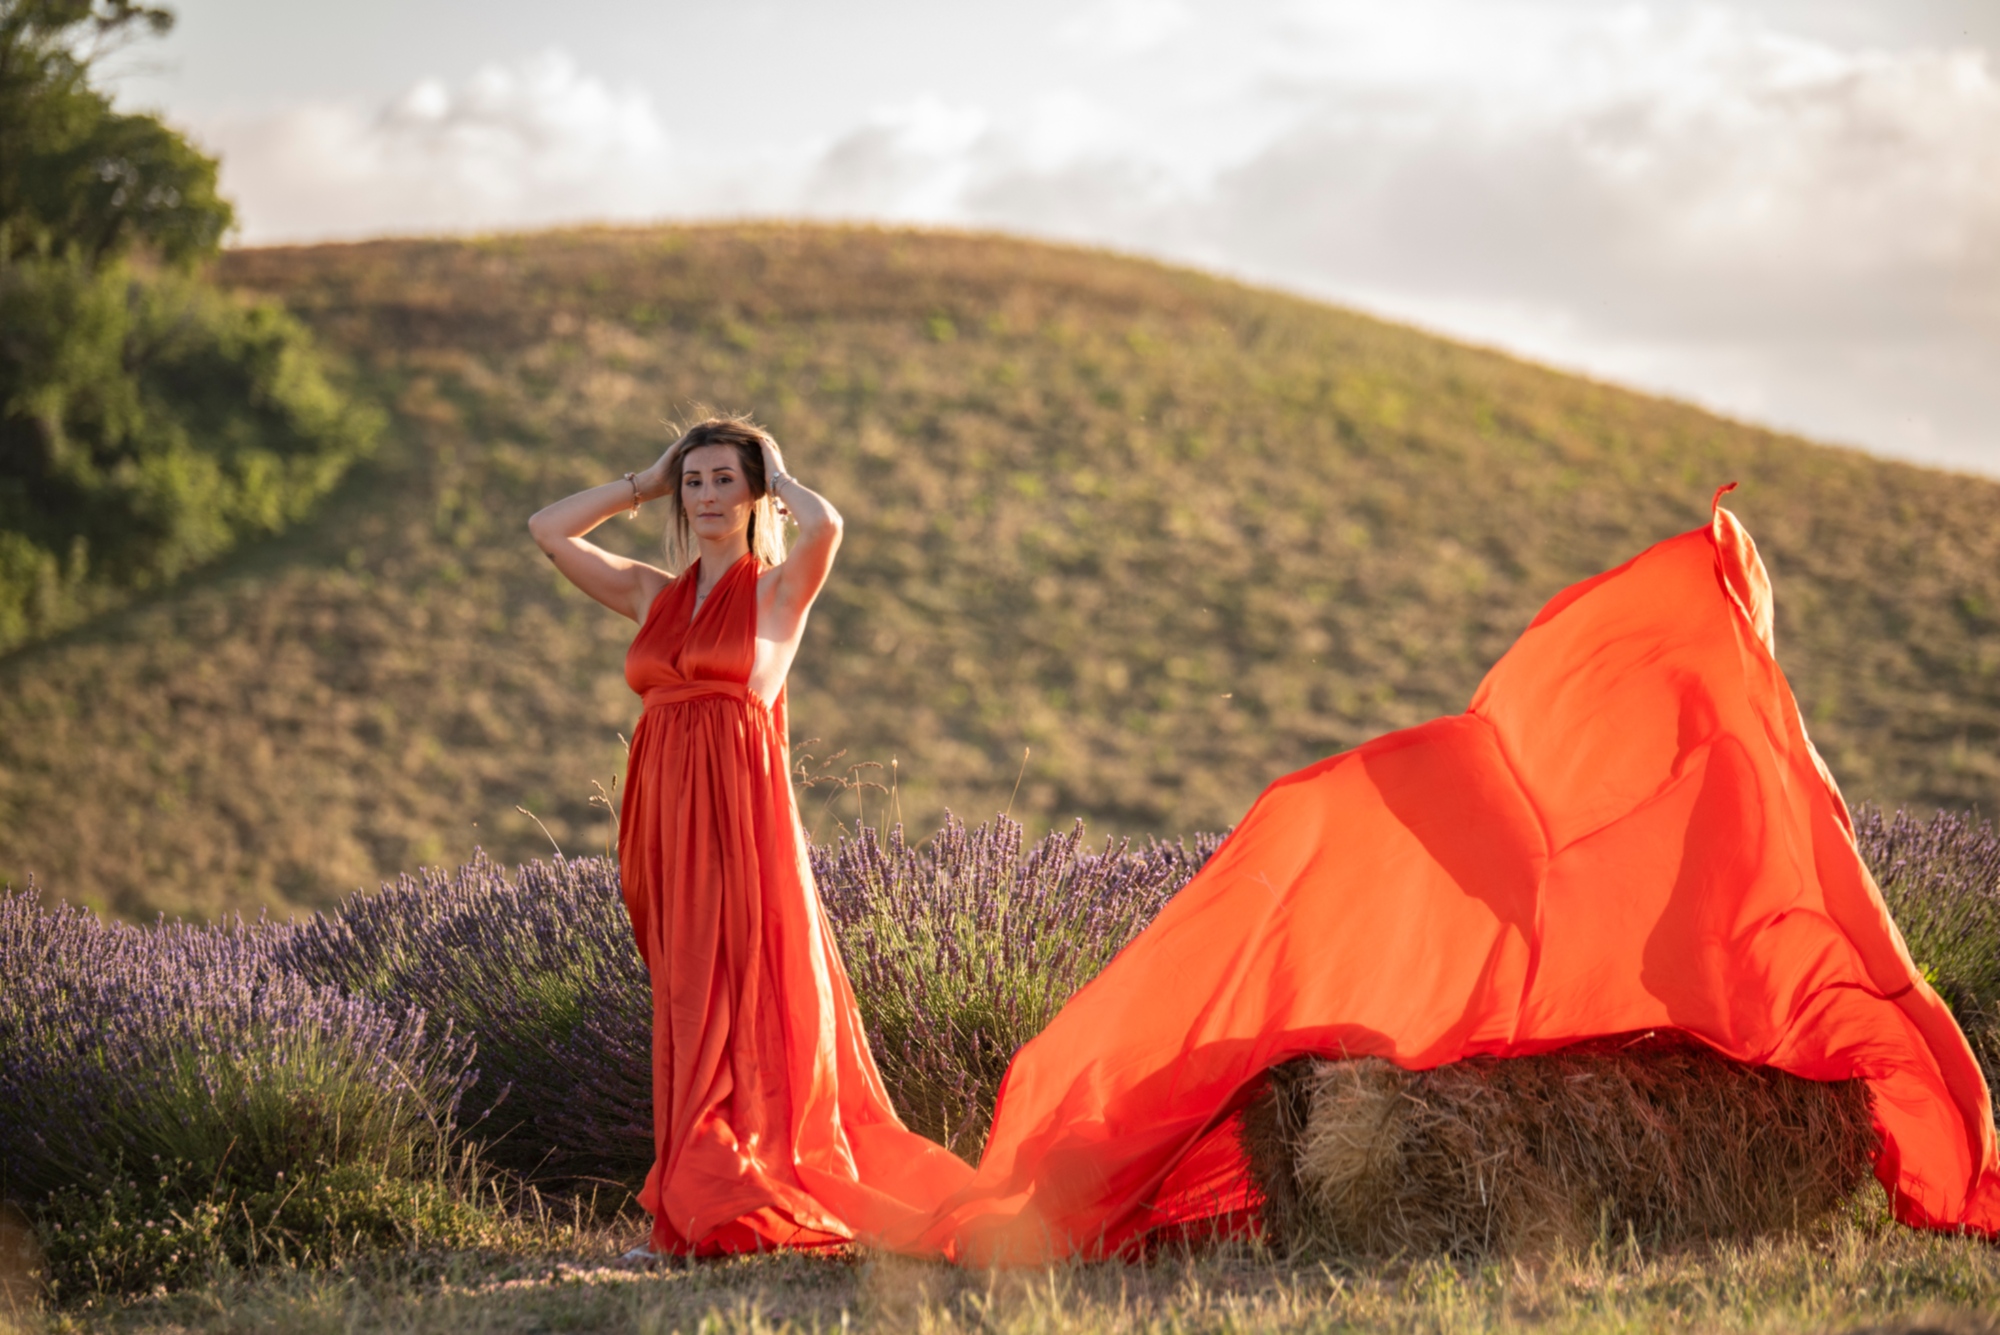 Servizio fotografico nelle campagne toscane con vestito volante